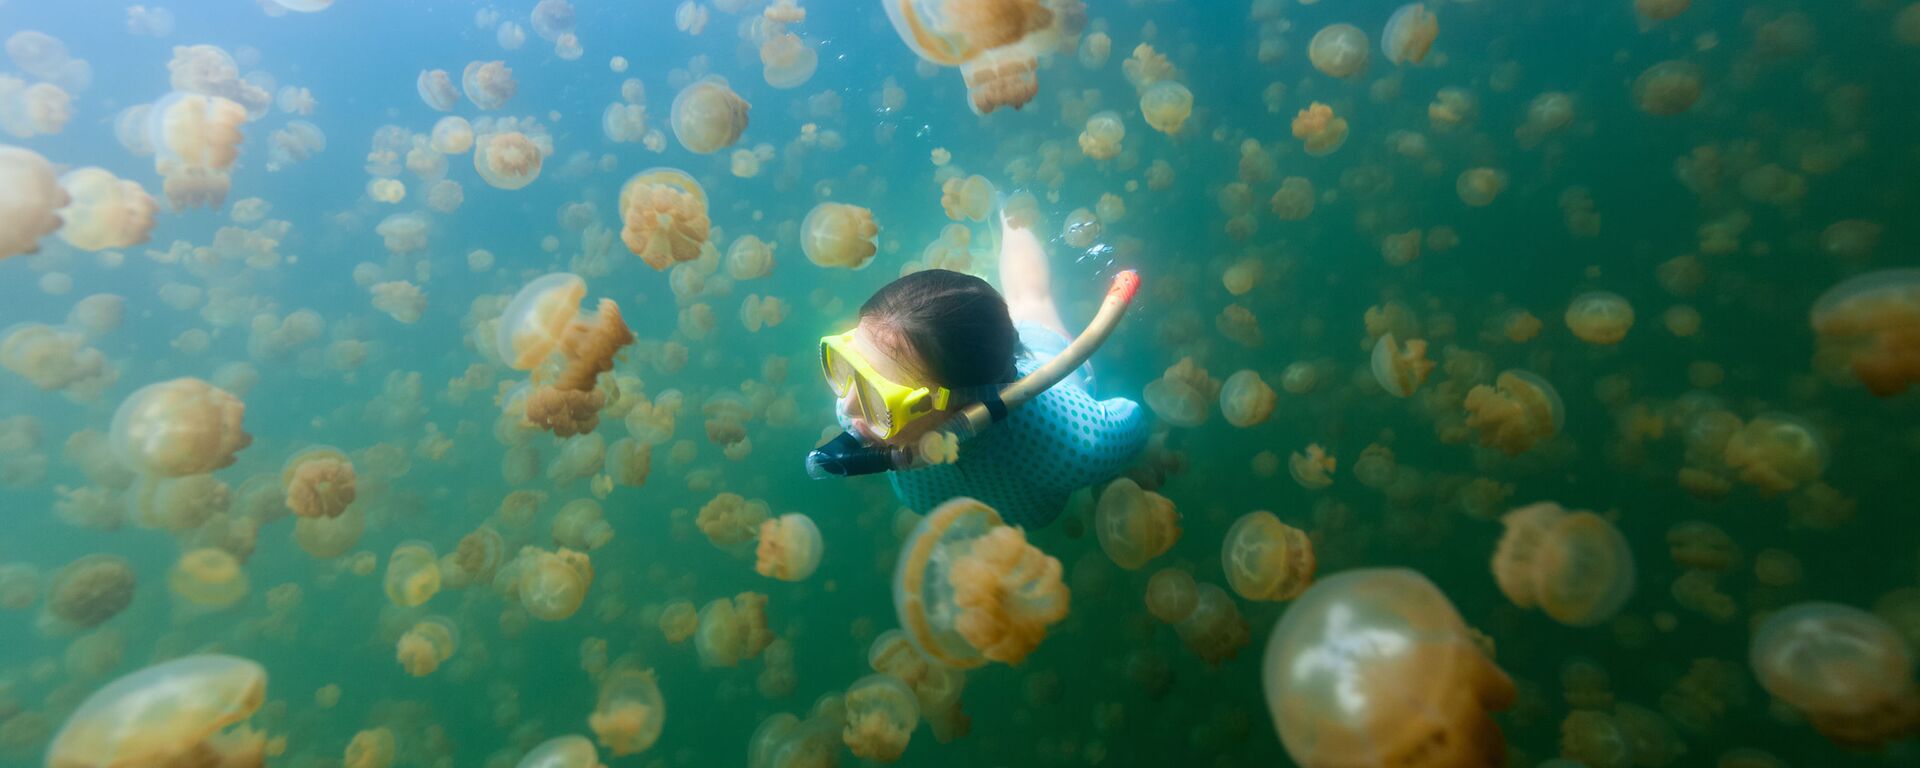 Cô gái đang lặn ở Hồ Medusa trong quần đảo Rocky, Palau. - Sputnik Việt Nam, 1920, 21.04.2019